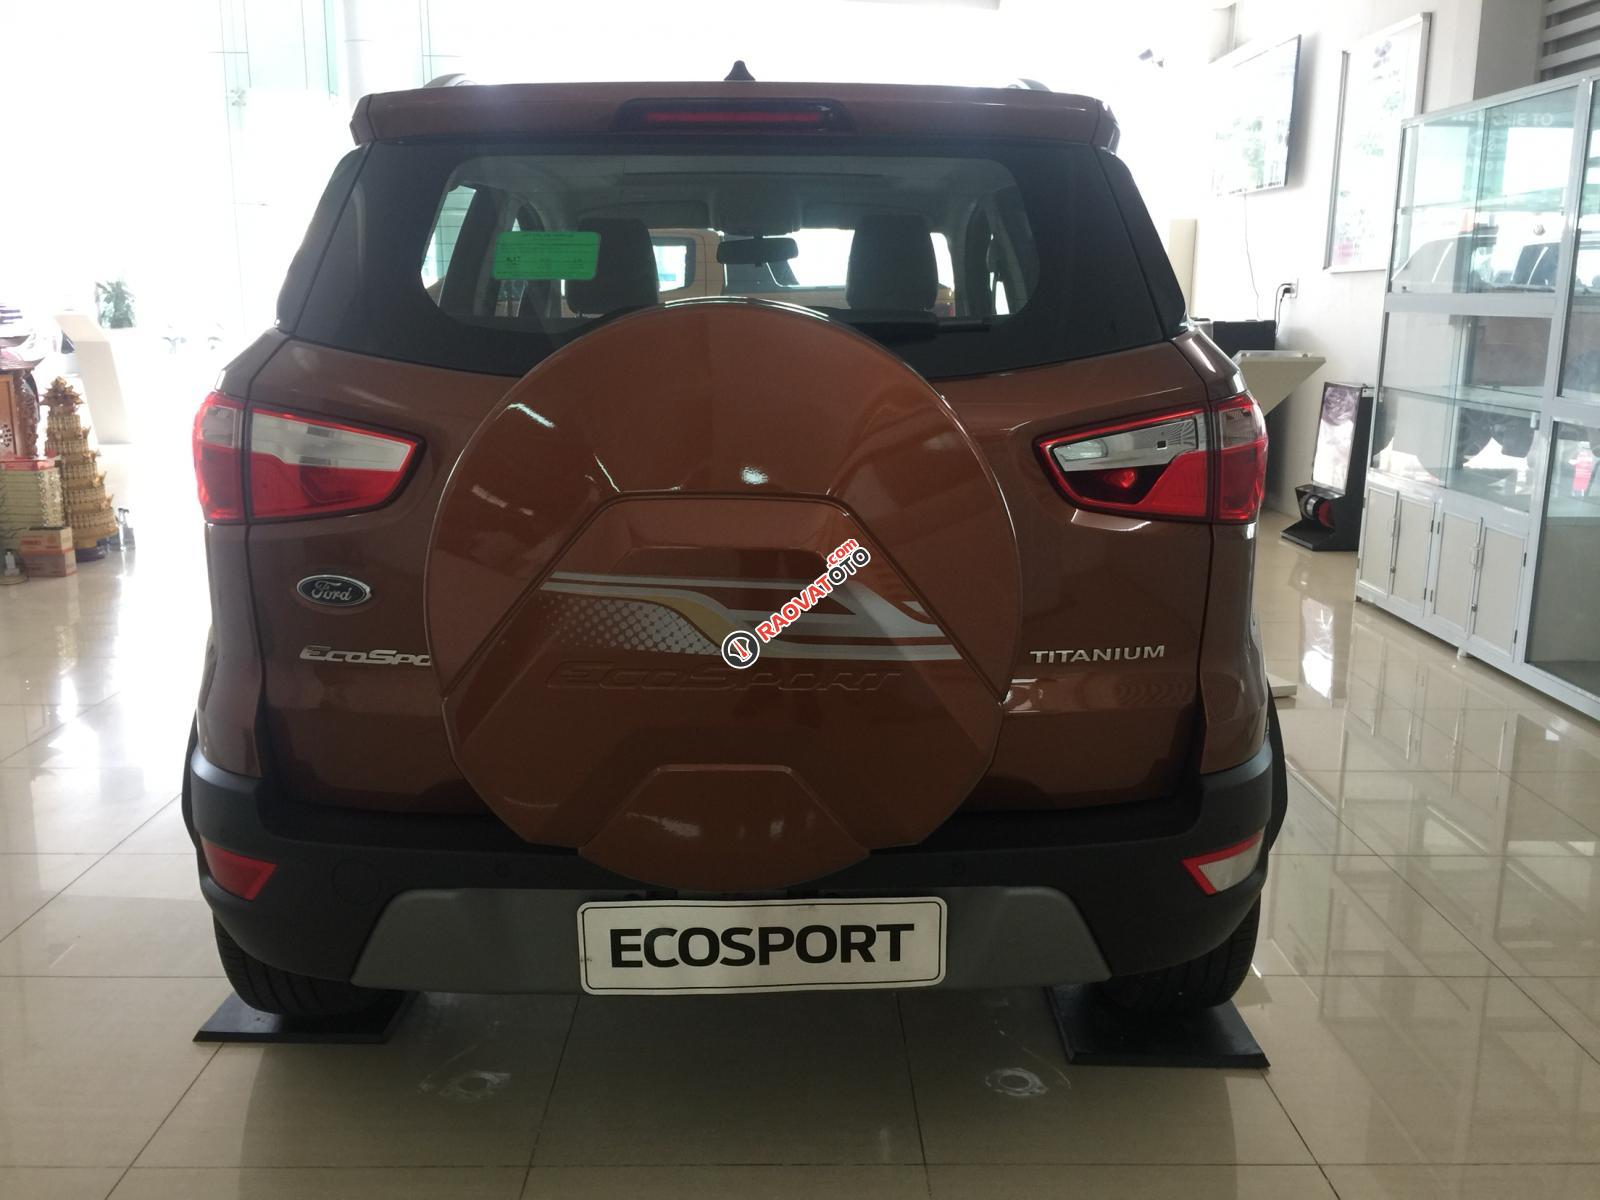 Bán Ford Ecosport 1.5 Titanium 2019 màu đỏ đồng, giảm 53tr, tặng bảo hiểm thân vỏ-4